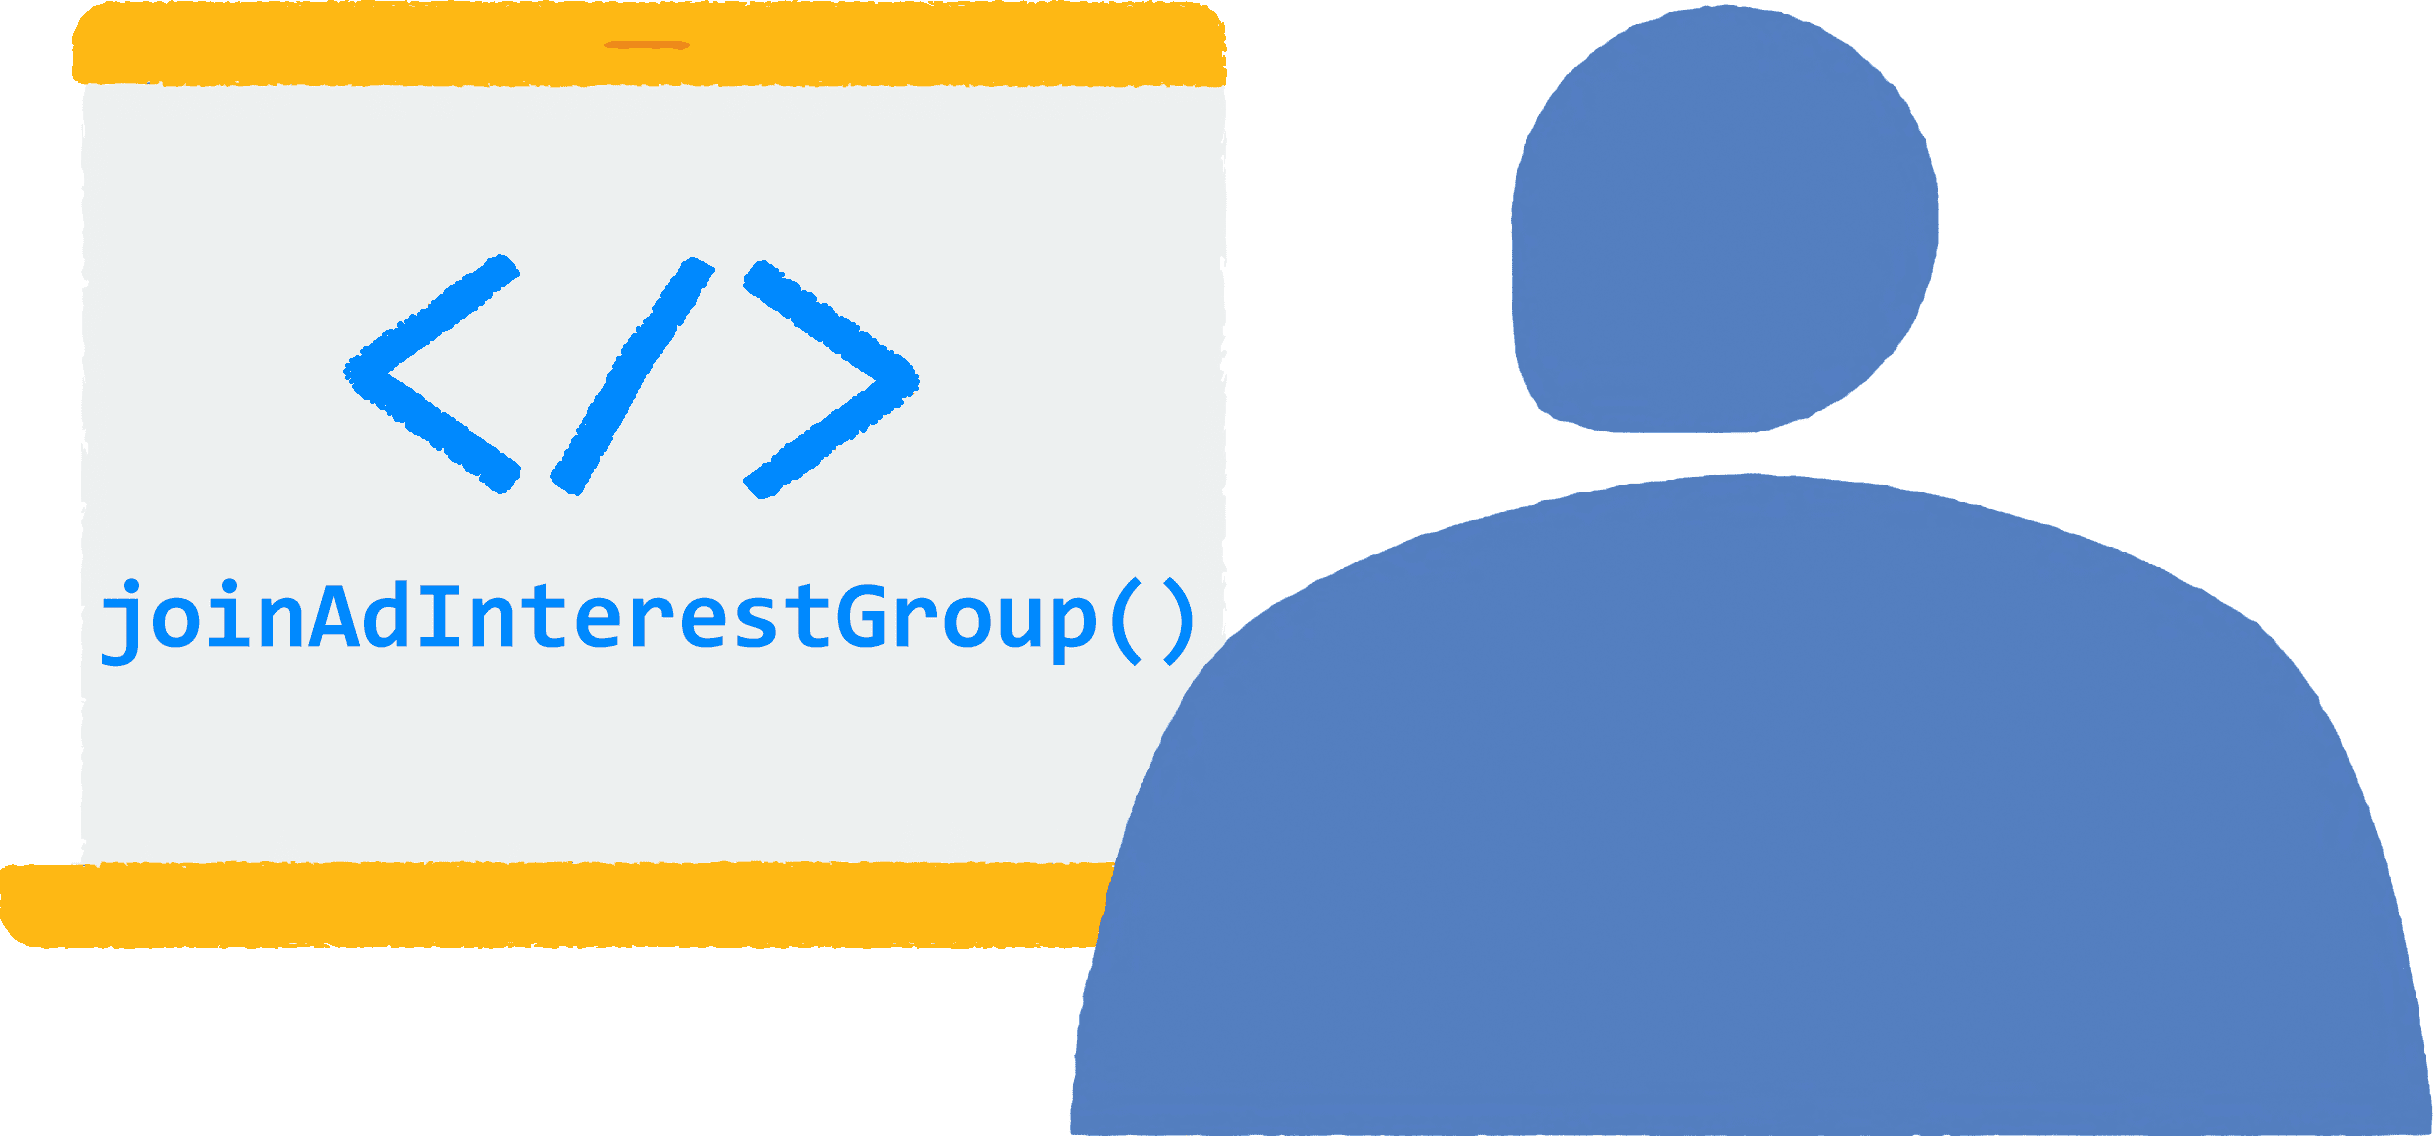 ユーザーがノートパソコンでブラウザを開いてサイトにアクセスします。広告のインタレスト グループに参加するための JavaScript コードがブラウザ内で実行されています。